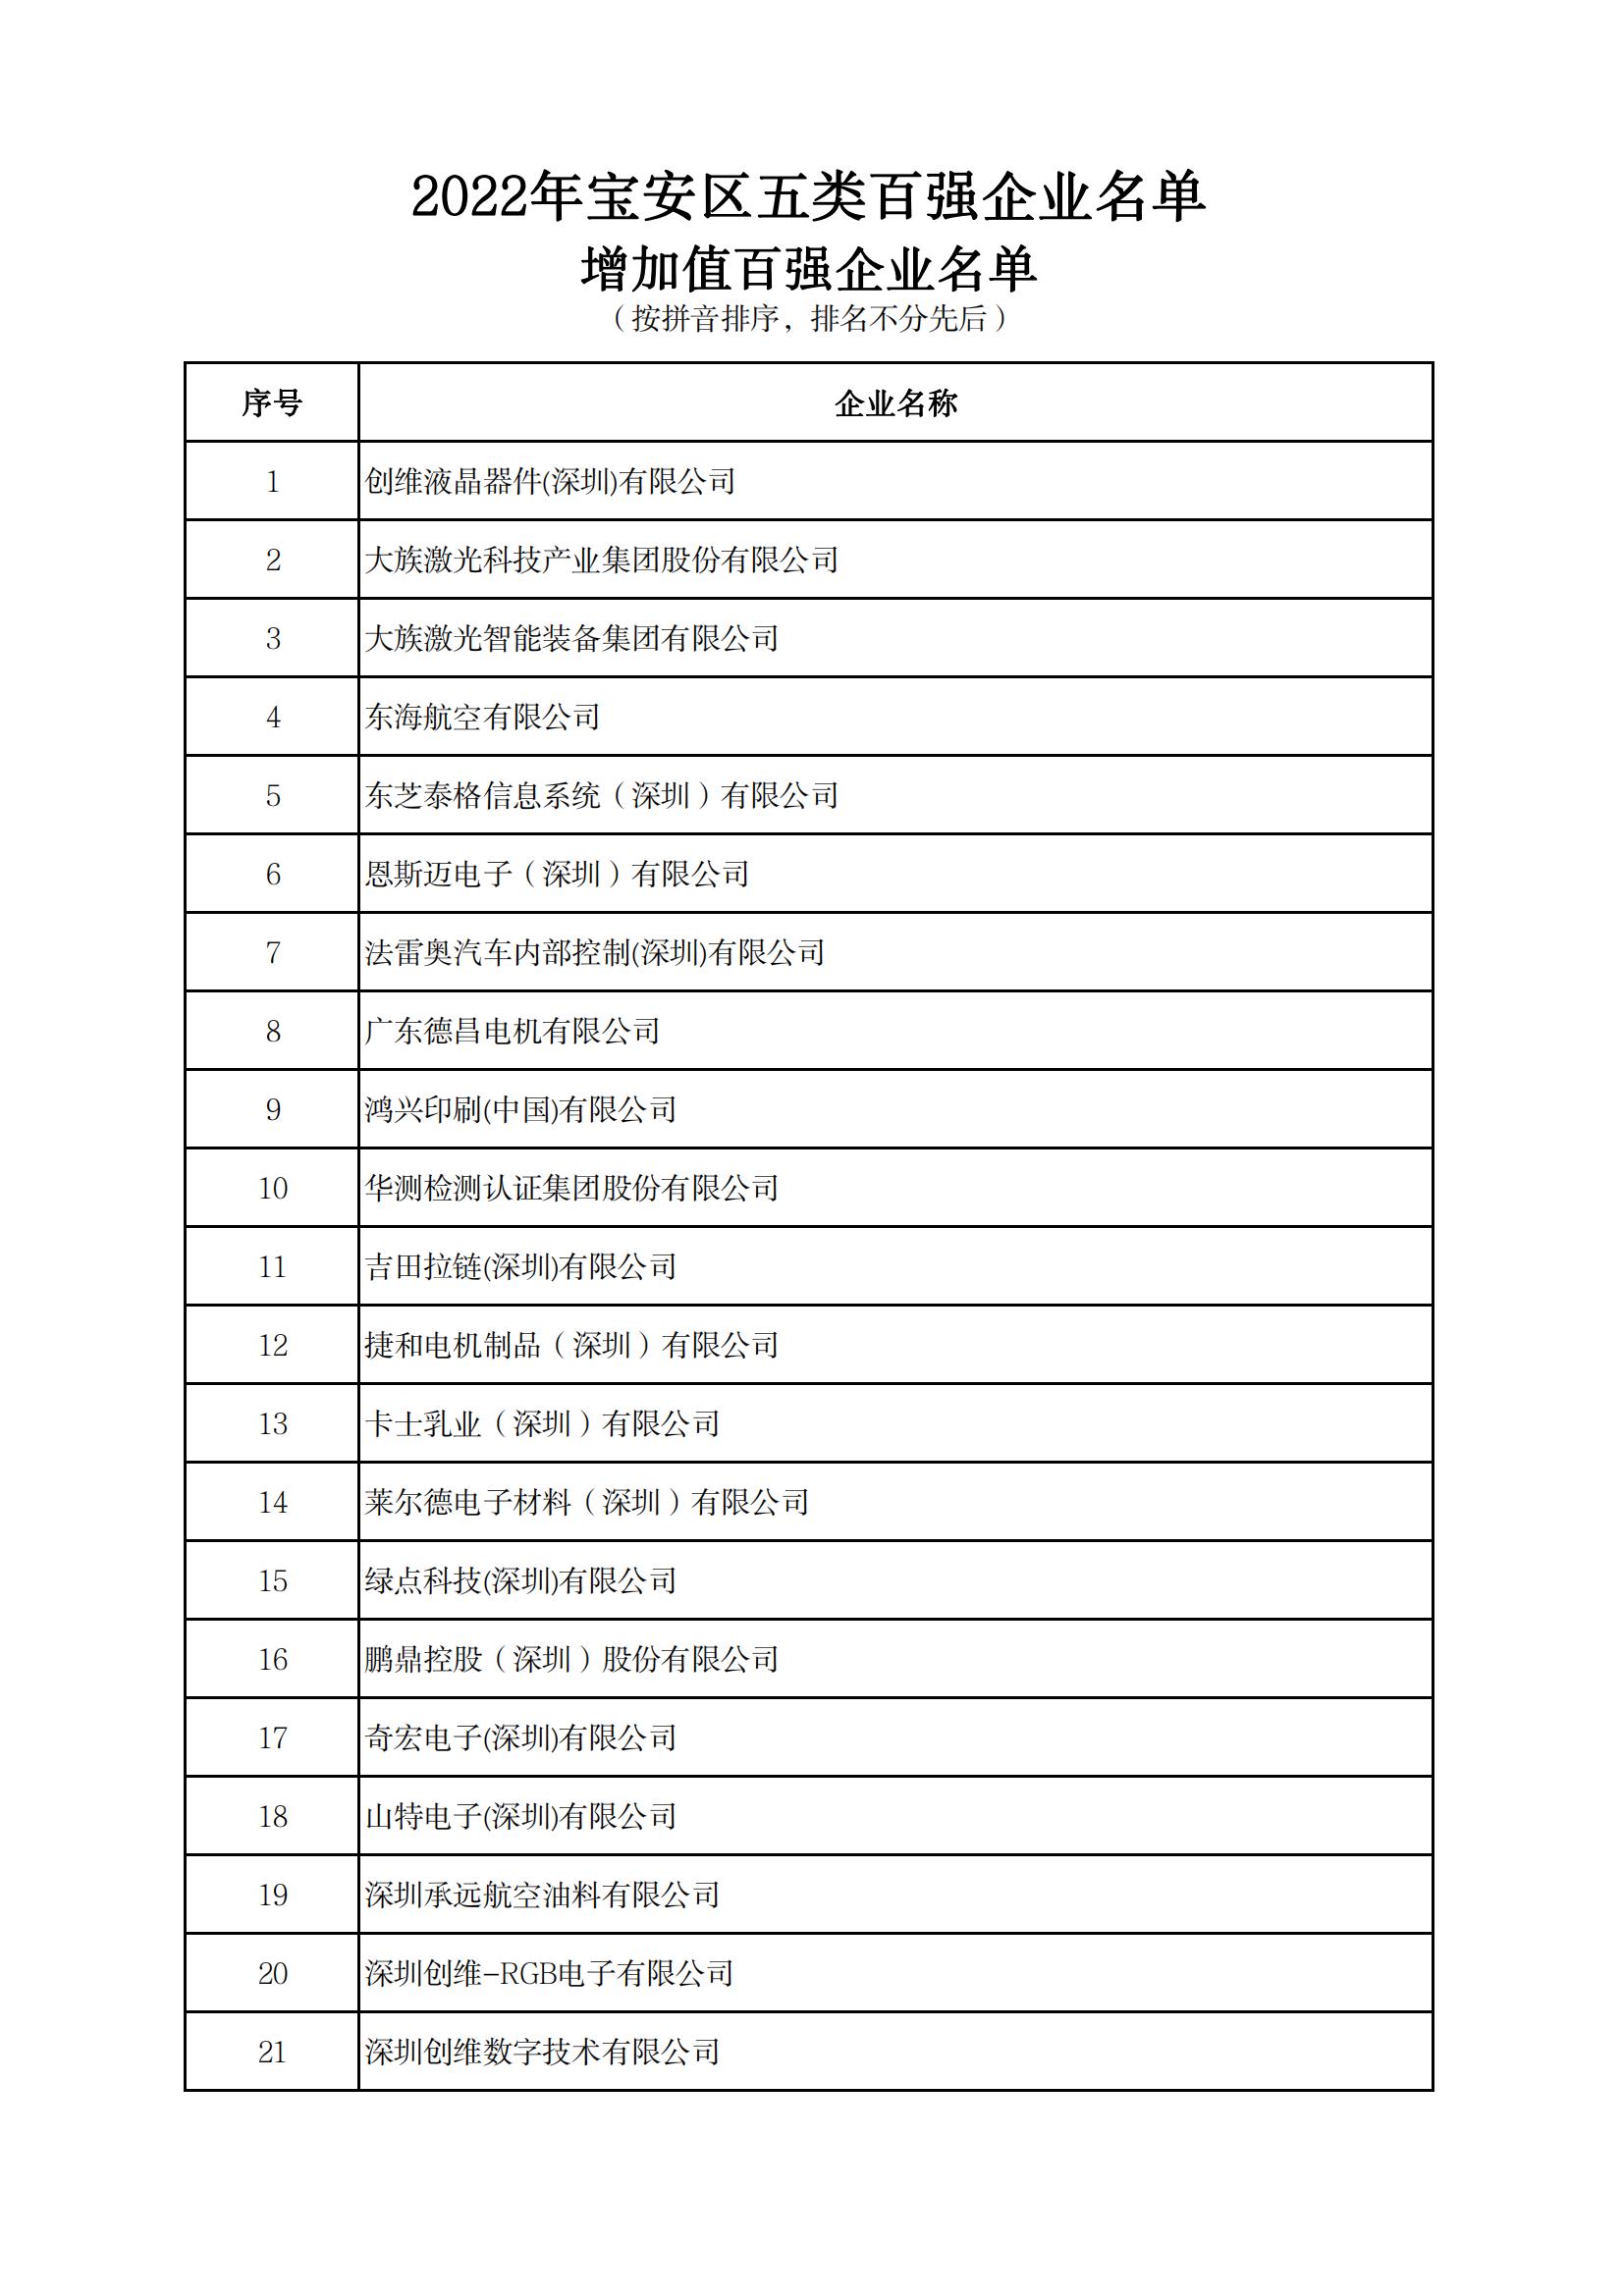 附件：2022年宝安区五类百强企业名单_05.jpg